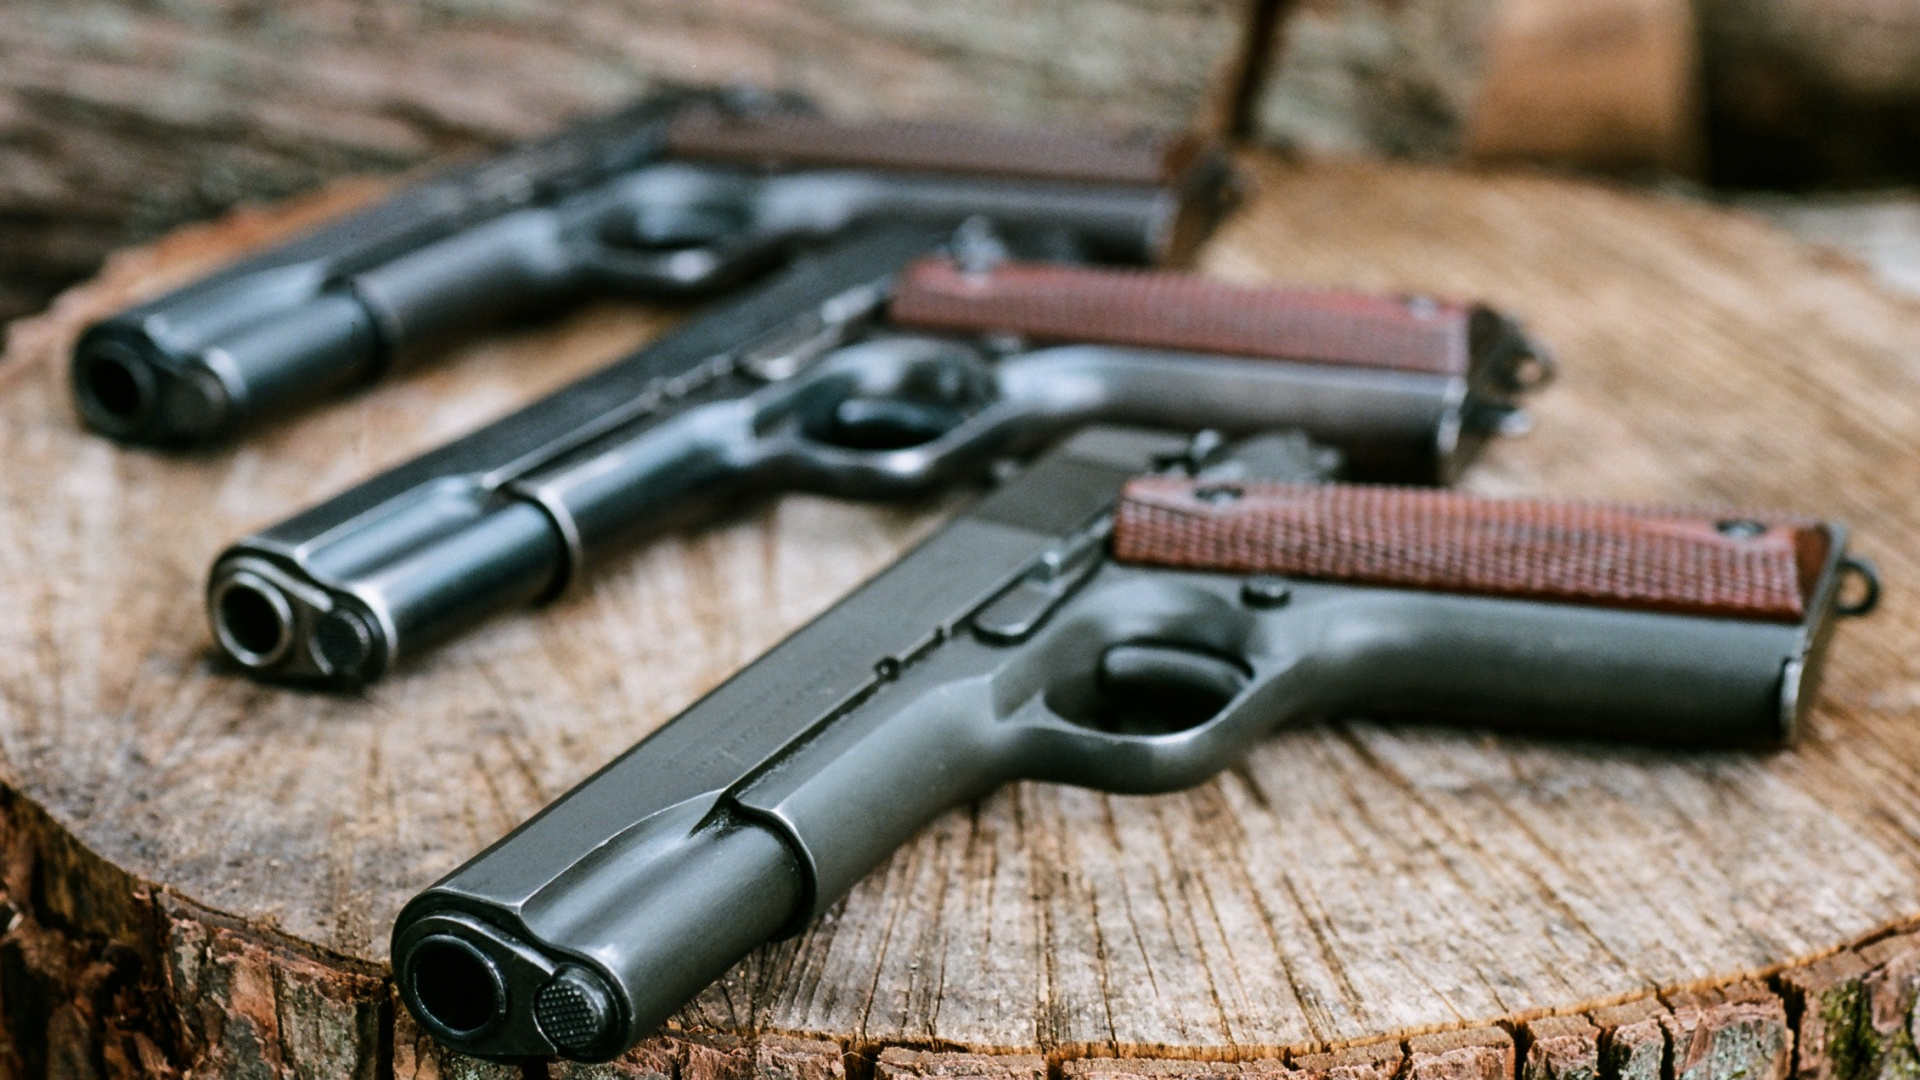 M1911 Pistol, Gun, Handgun, Firearm, Trigger. Wallpaper in 1920x1080 Resolution